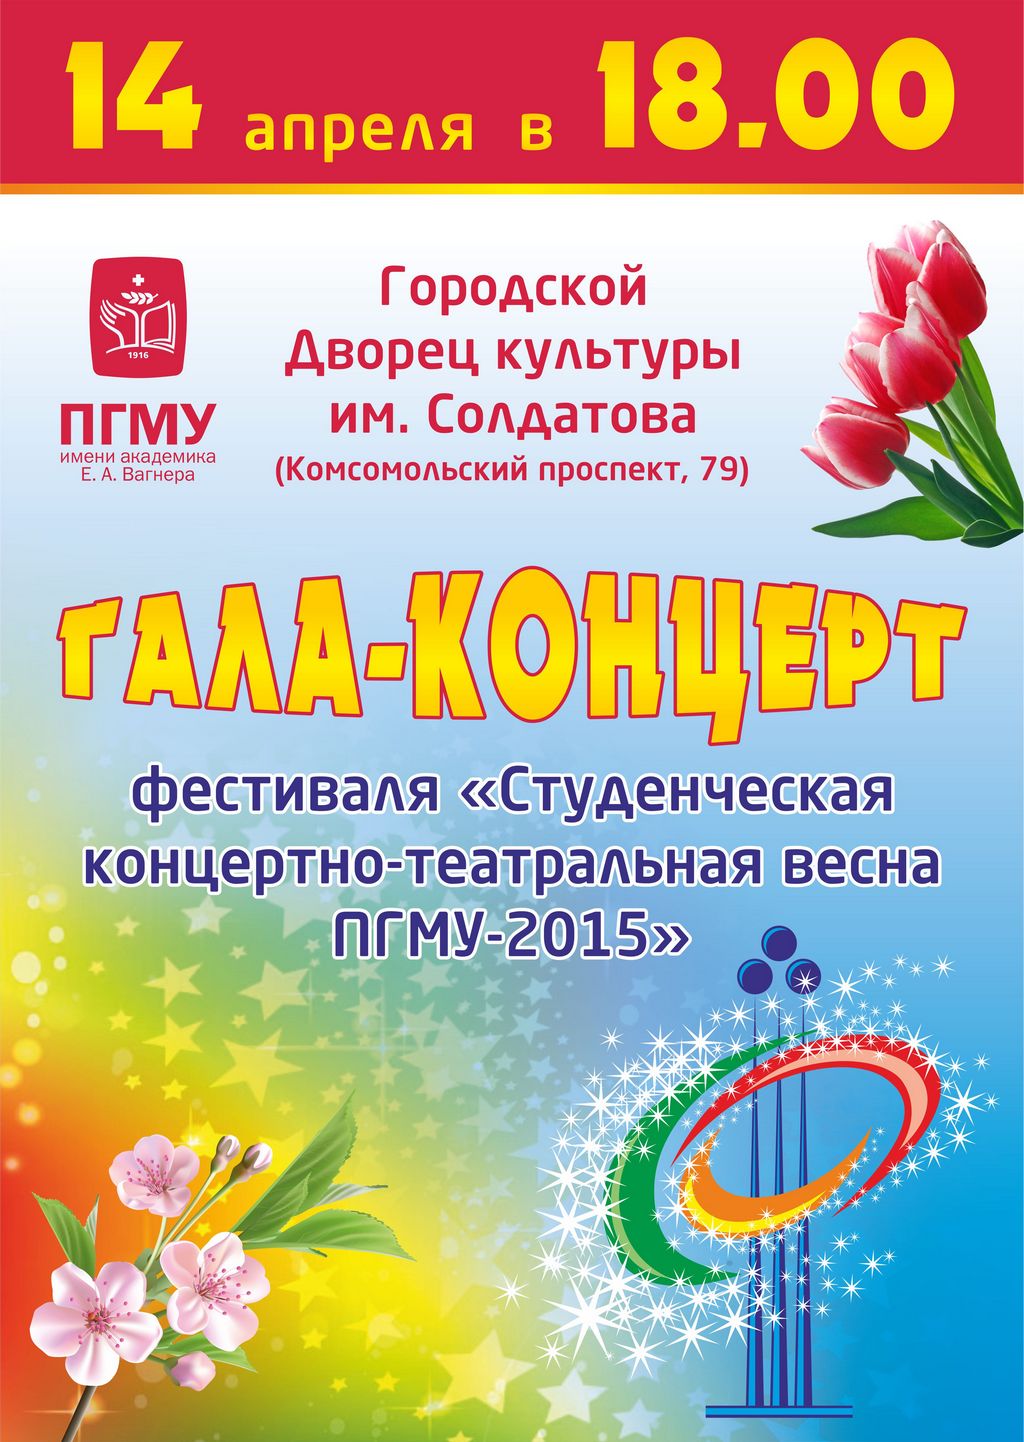 Гала-концерт фестиваля «Студенческая концертно-театральная весна ПГМУ-2015»